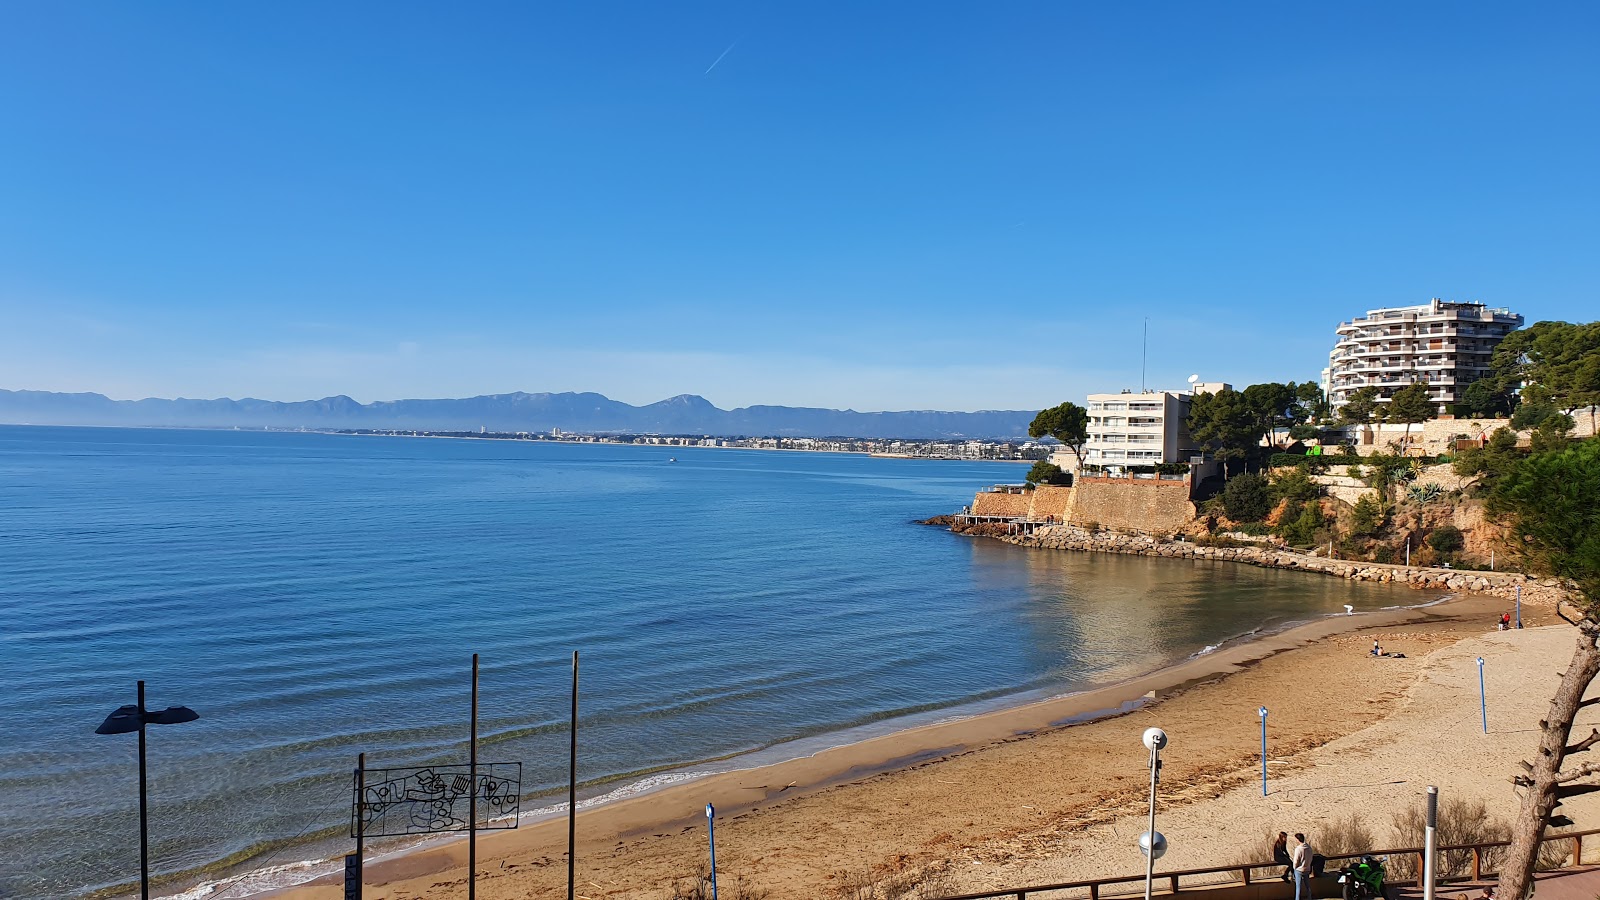 Platja dels Capellans'in fotoğrafı kahverengi kum yüzey ile